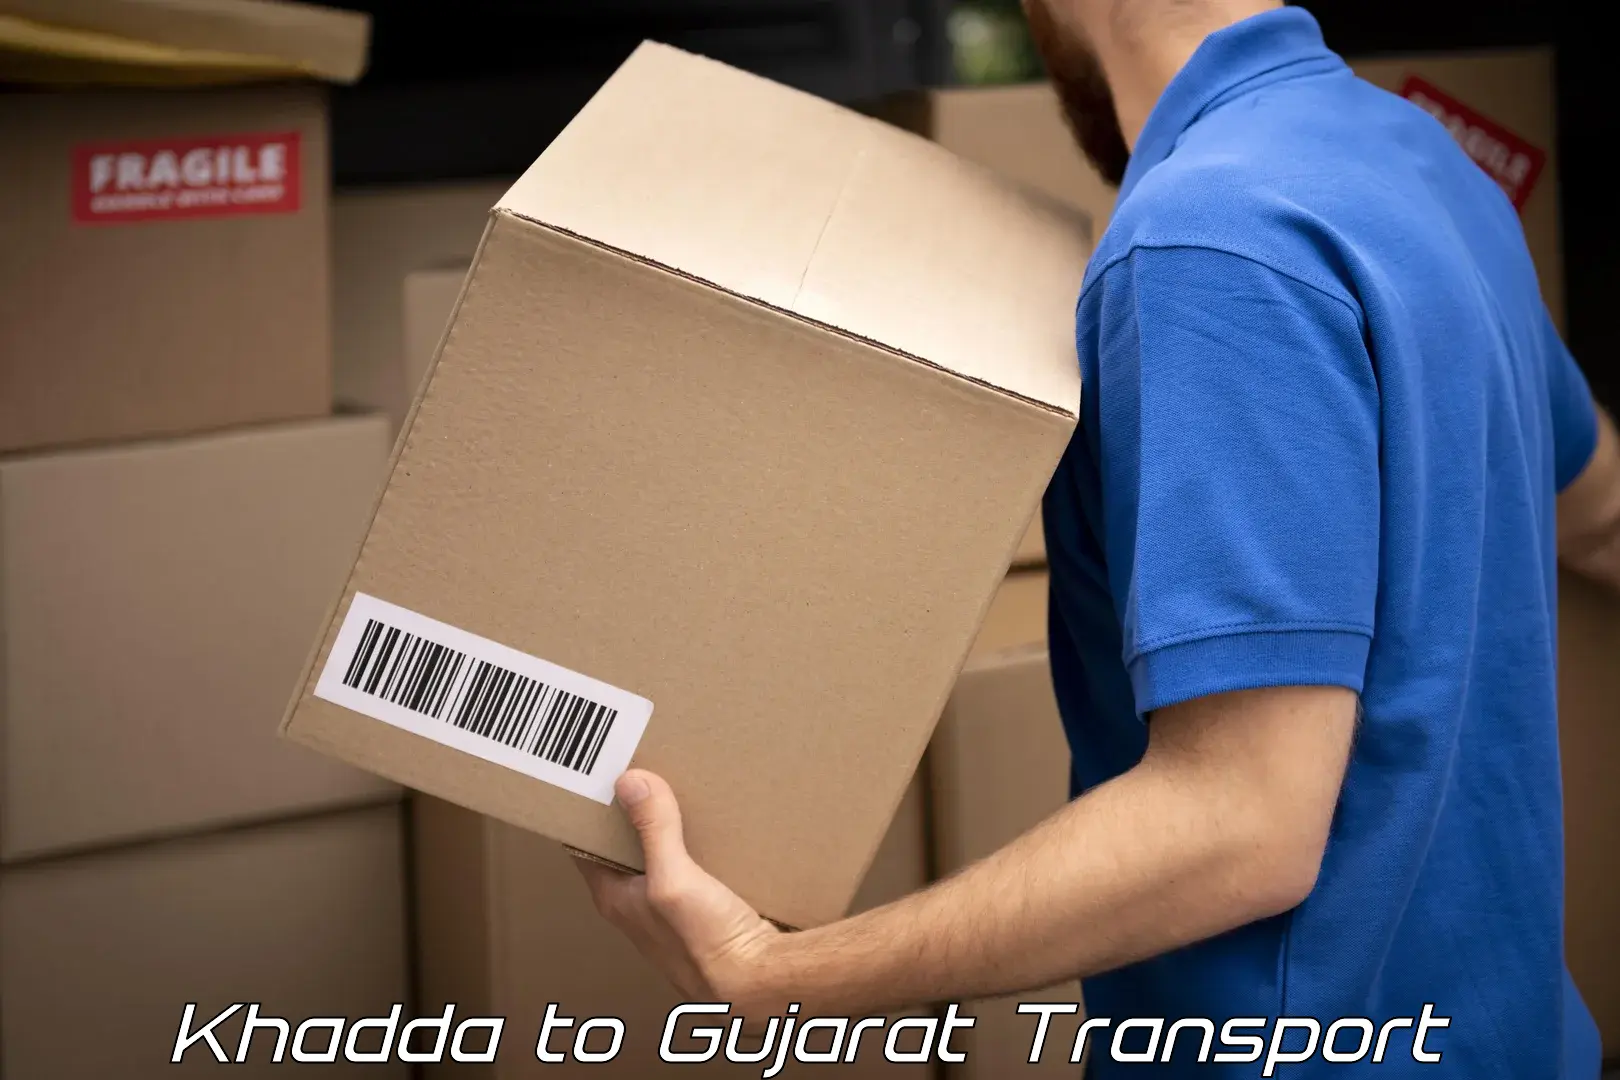 Commercial transport service Khadda to Vadodara